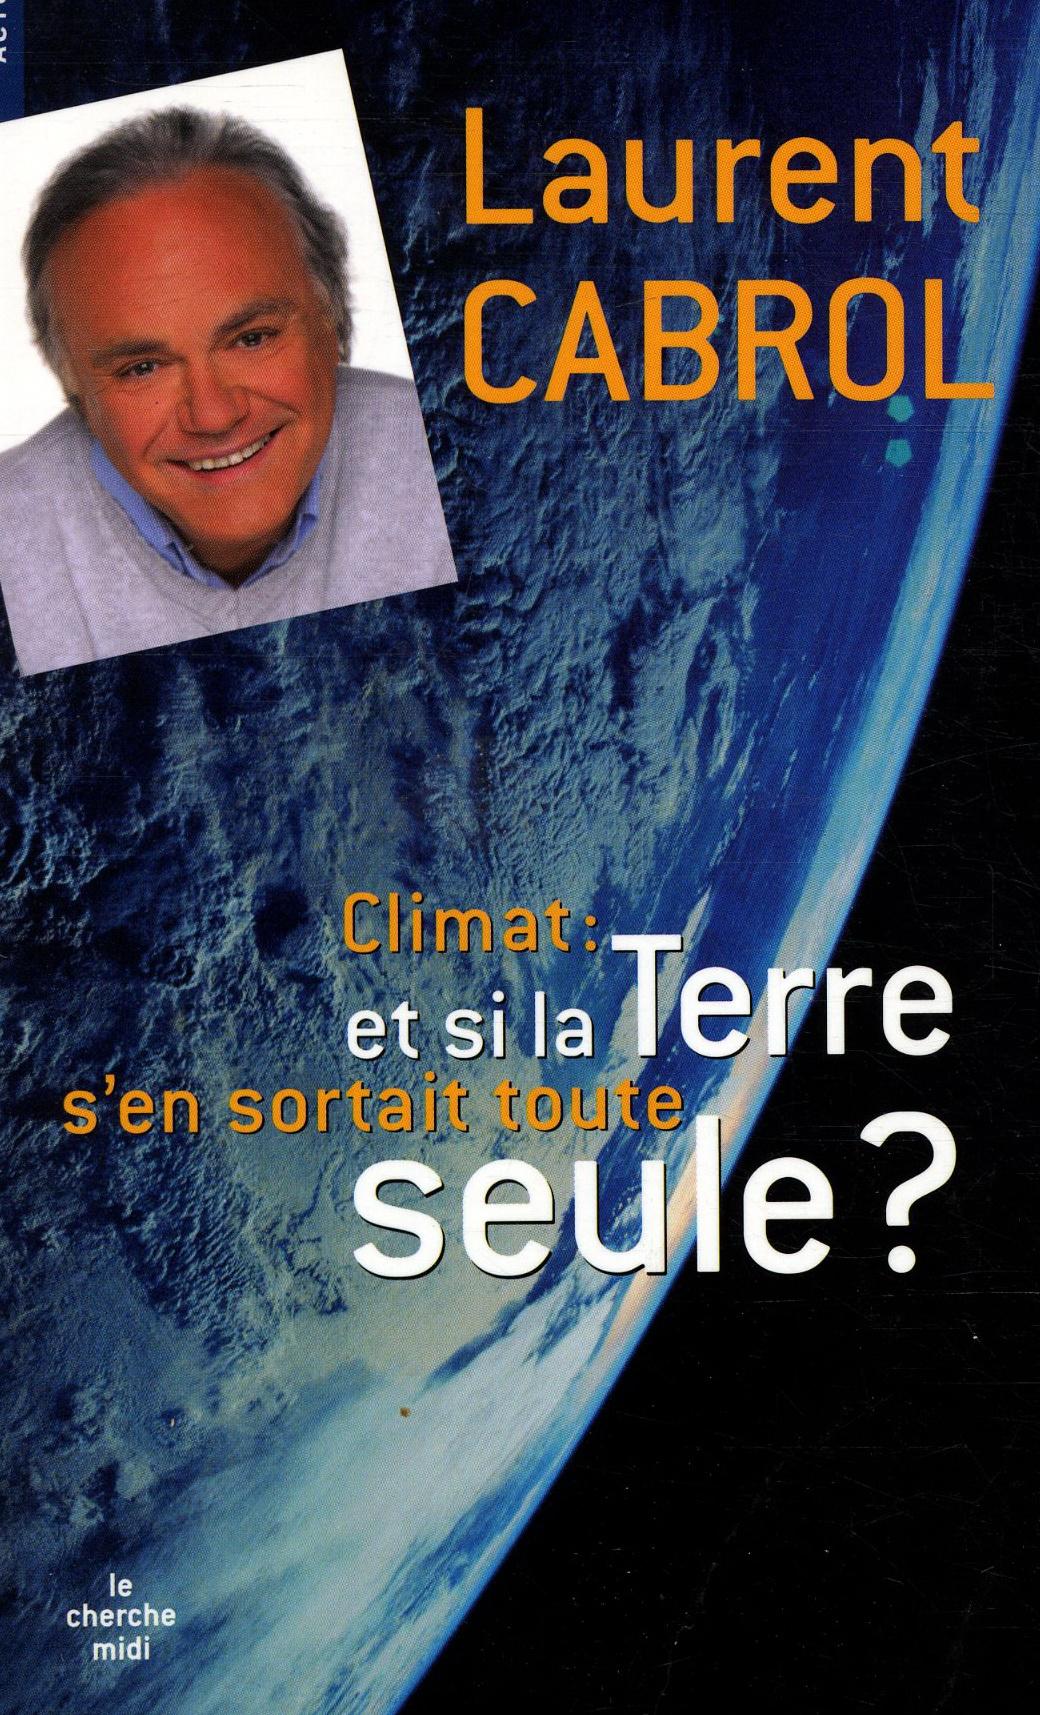 Vente Livre :                                    Climat : et si la Terre s'en sortait toute seule ?
- Laurent Cabrol                                     